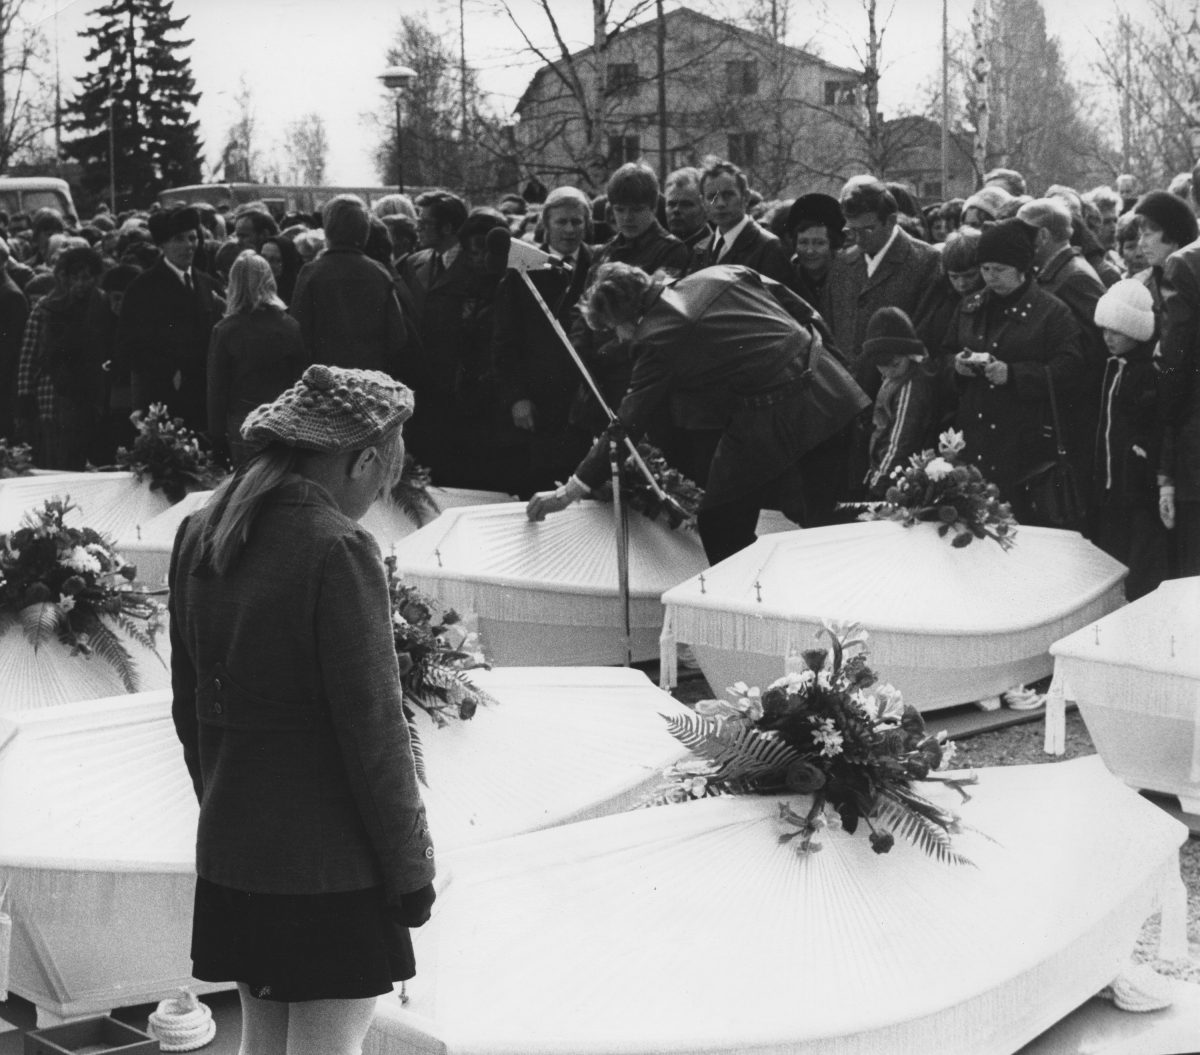 Patruunatehtaan uhrien siunaustilaisuudessa kuvasi toimittaja Toive Tynjälä.